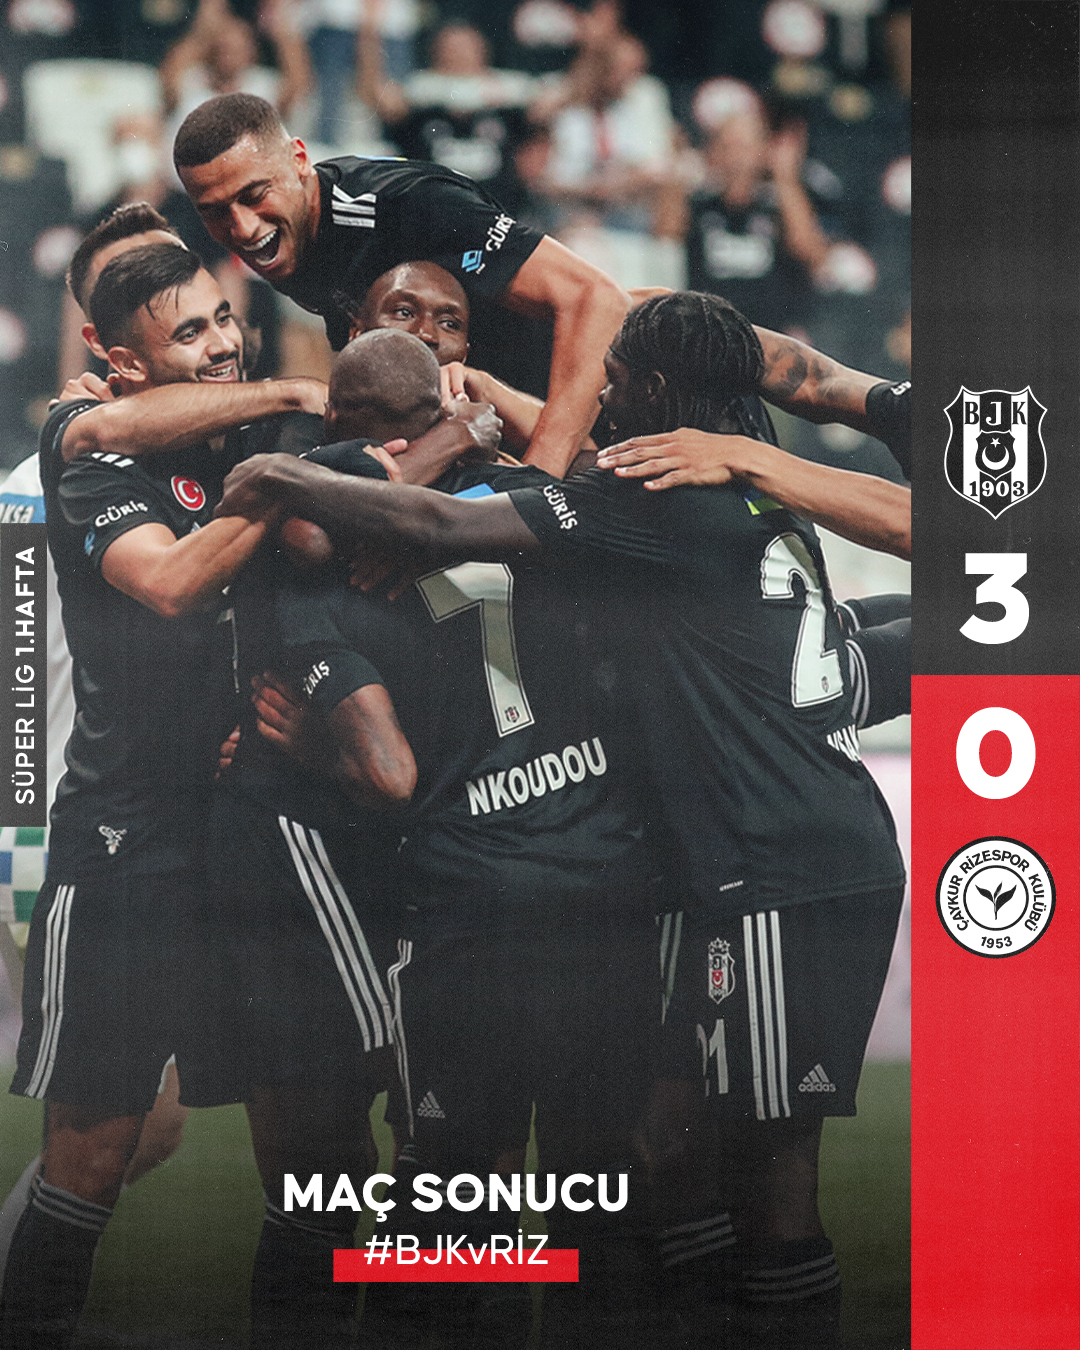 Beşiktaş Rizespor'u 3-0 Yenerek Lige Giriş Yapmıştı